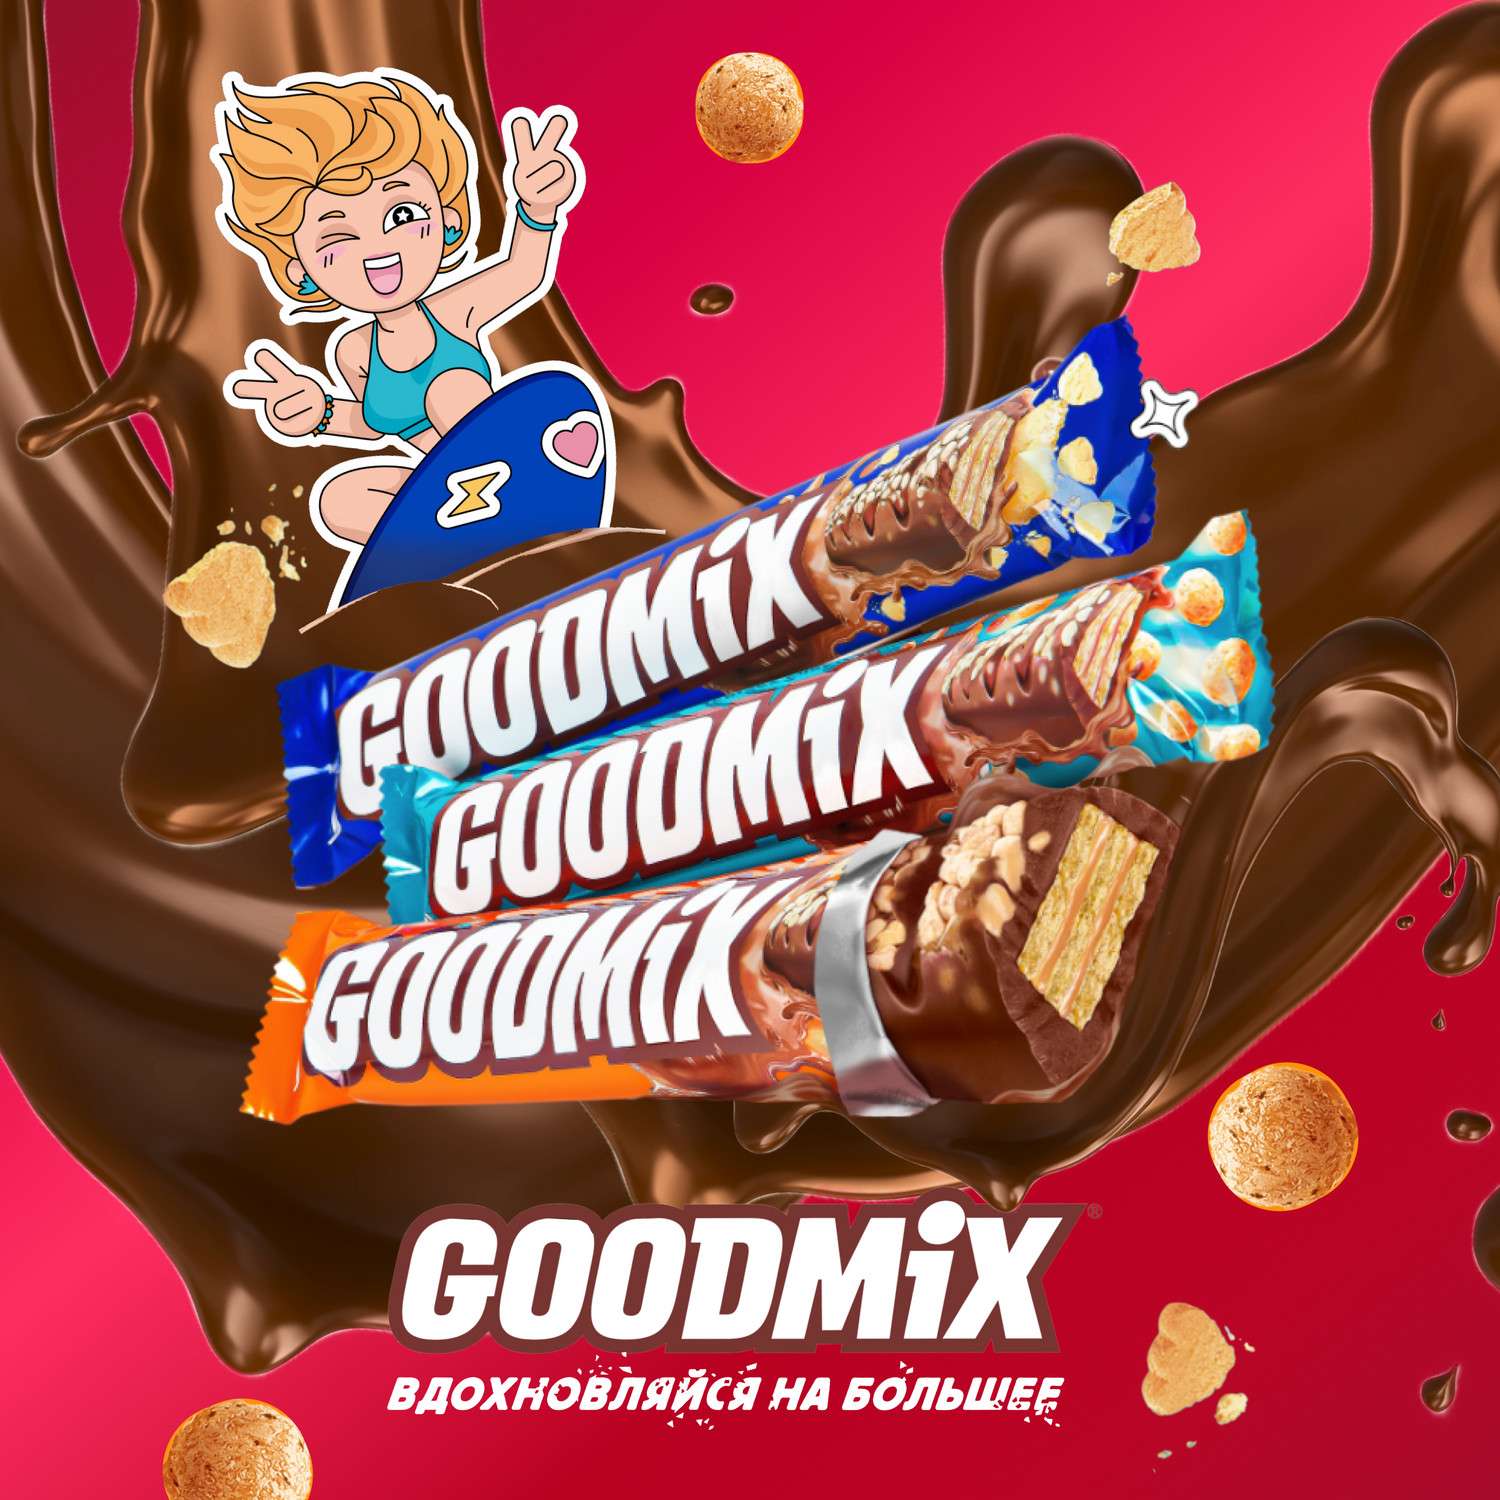 Батончик шоколадный Goodmix Duo попкорн 45г - фото 8